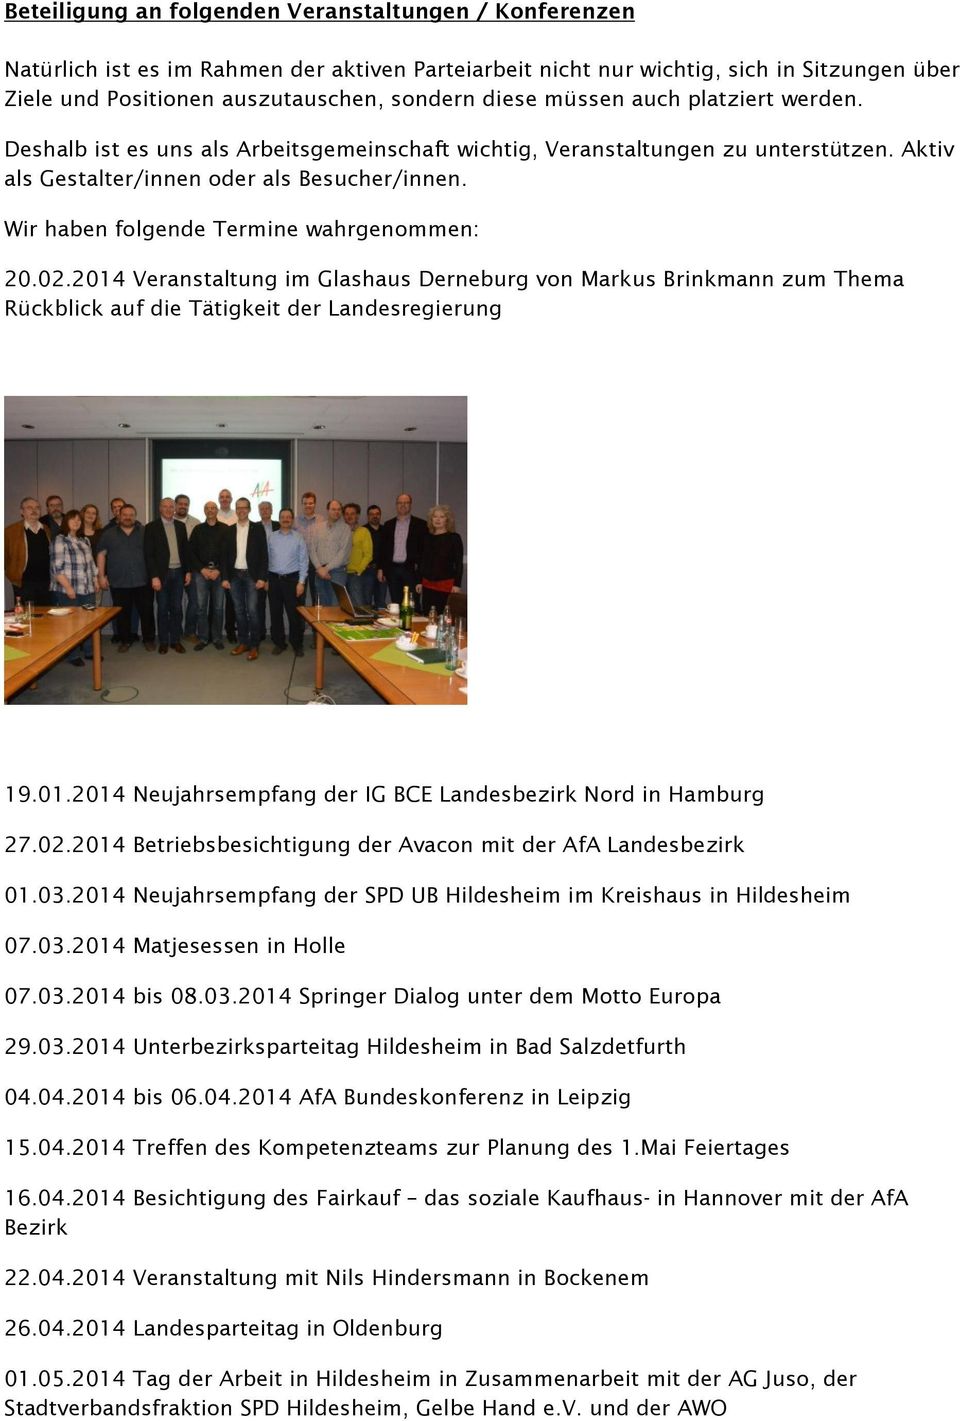 Wir haben folgende Termine wahrgenommen: 20.02.2014 Veranstaltung im Glashaus Derneburg von Markus Brinkmann zum Thema Rückblick auf die Tätigkeit der Landesregierung 19.01.2014 Neujahrsempfang der IG BCE Landesbezirk Nord in Hamburg 27.